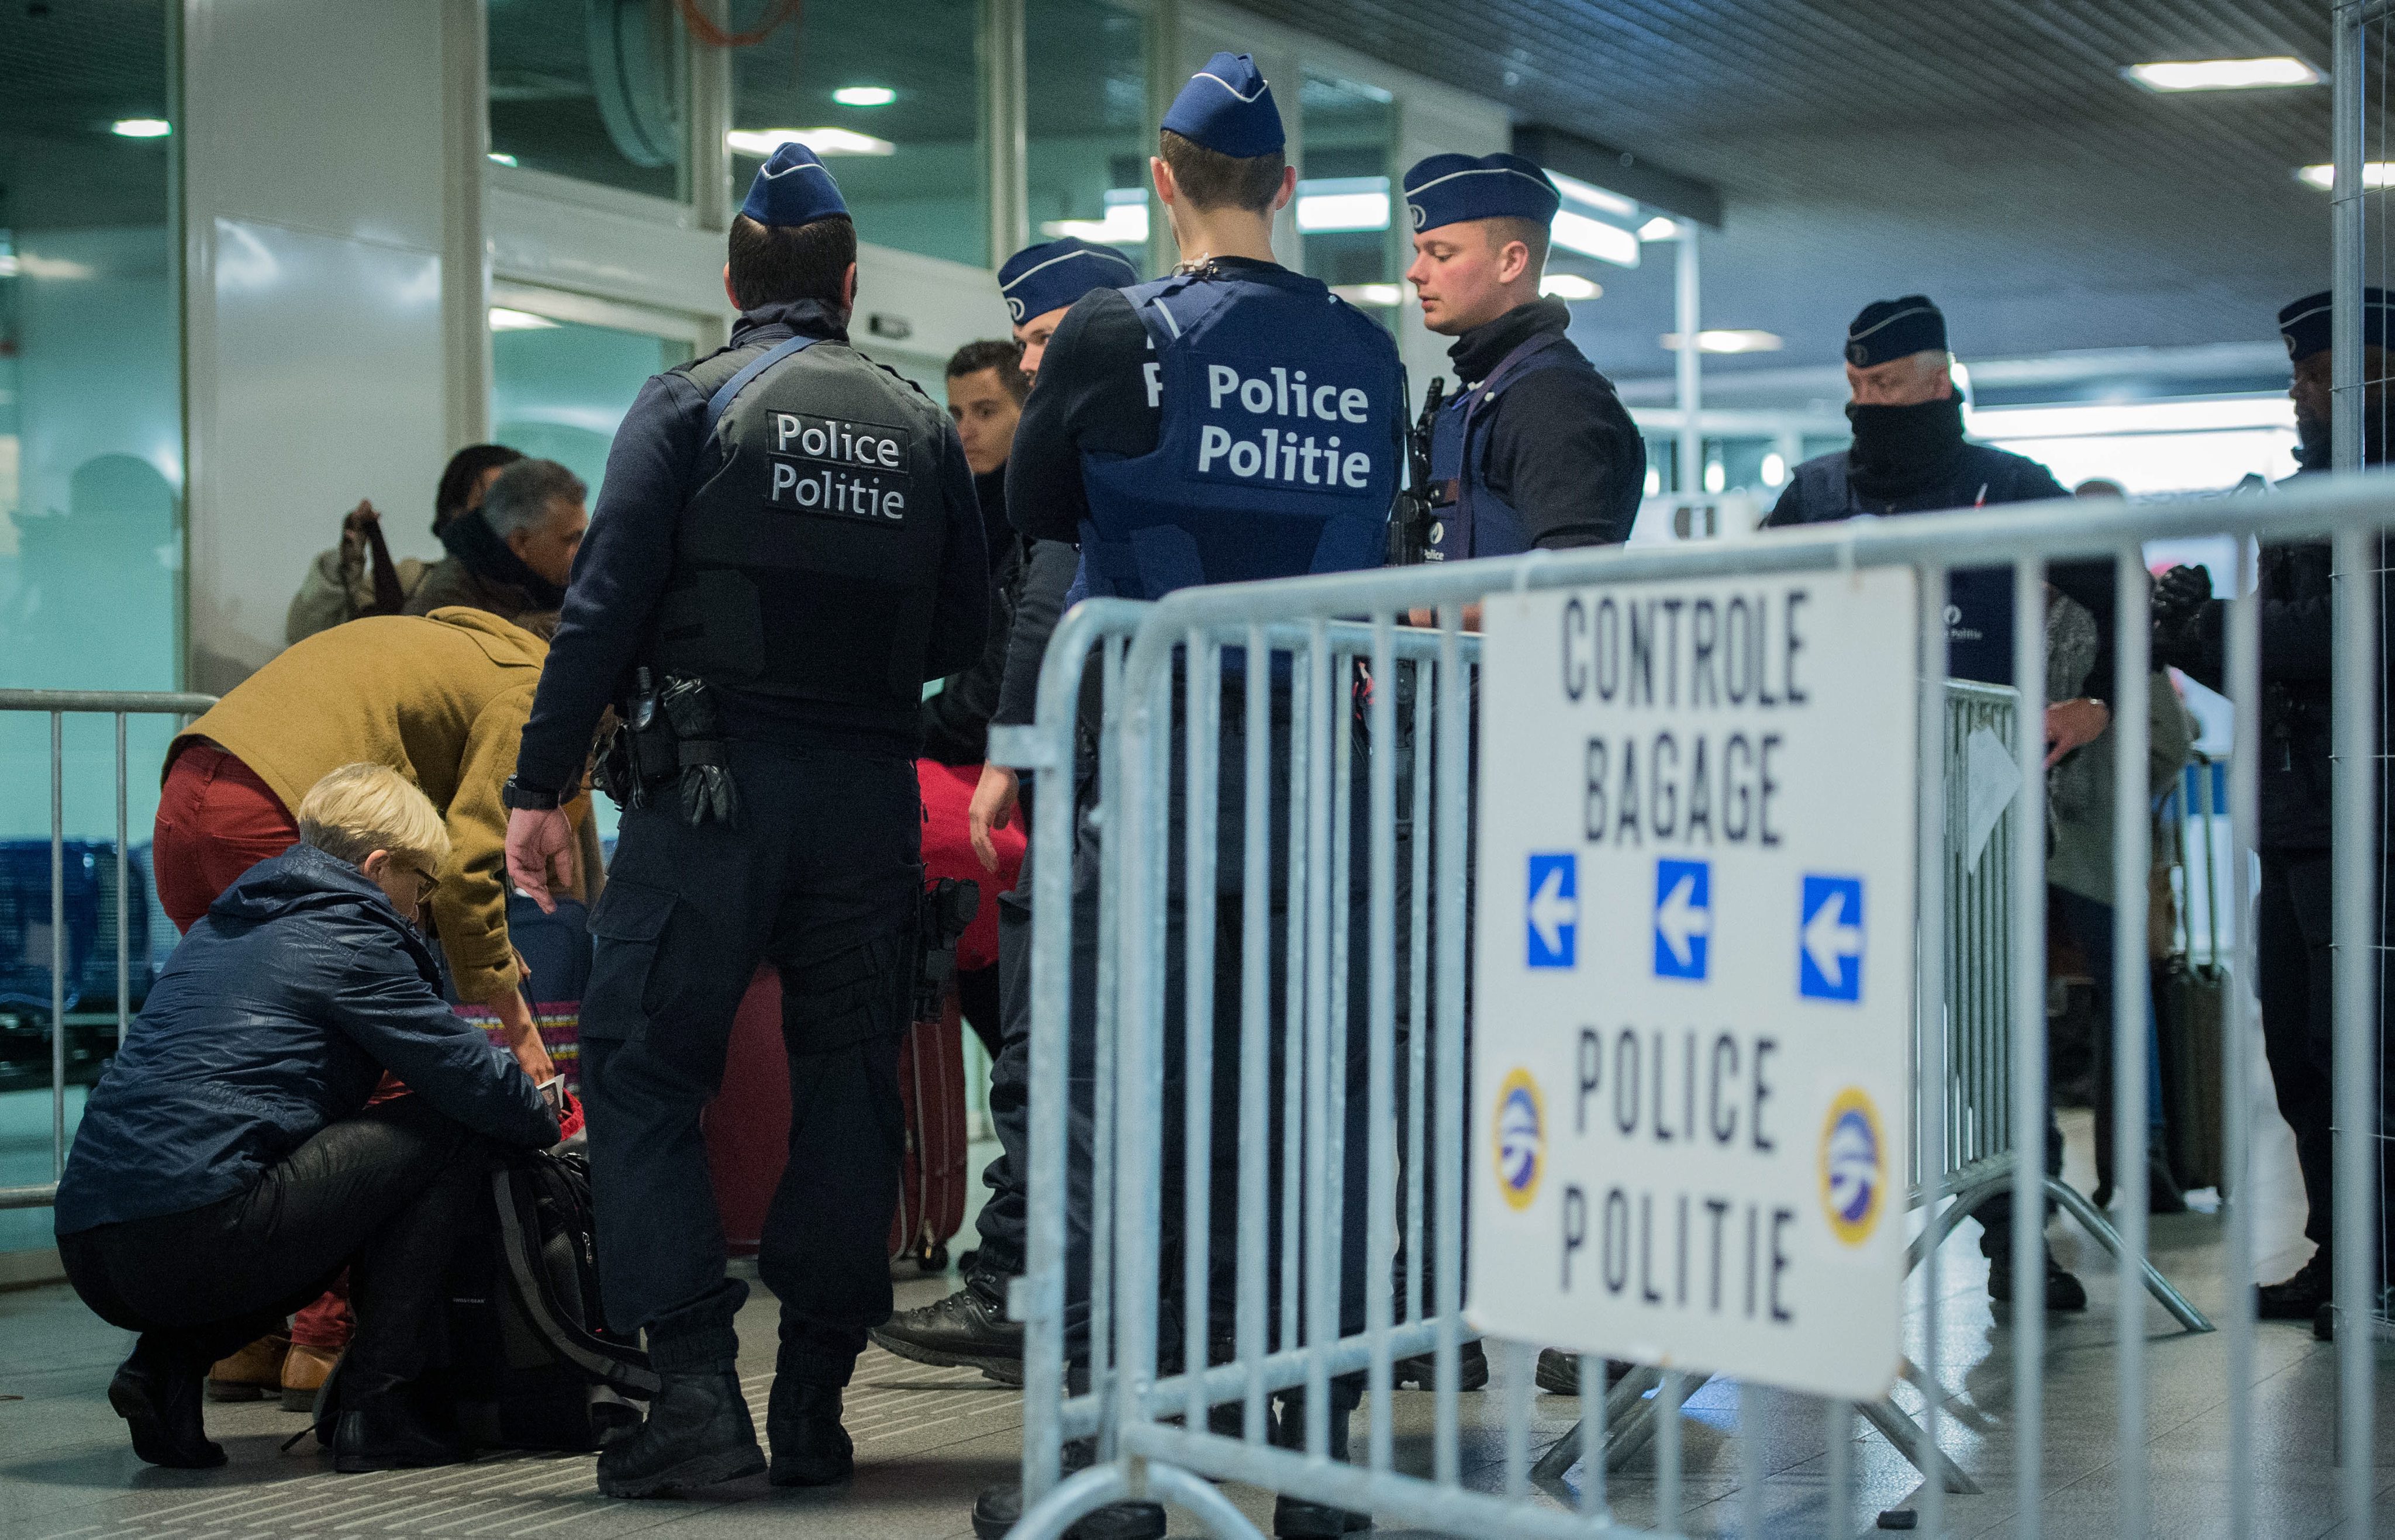 Безпрецеденти мерки за сигурност в Брюксел